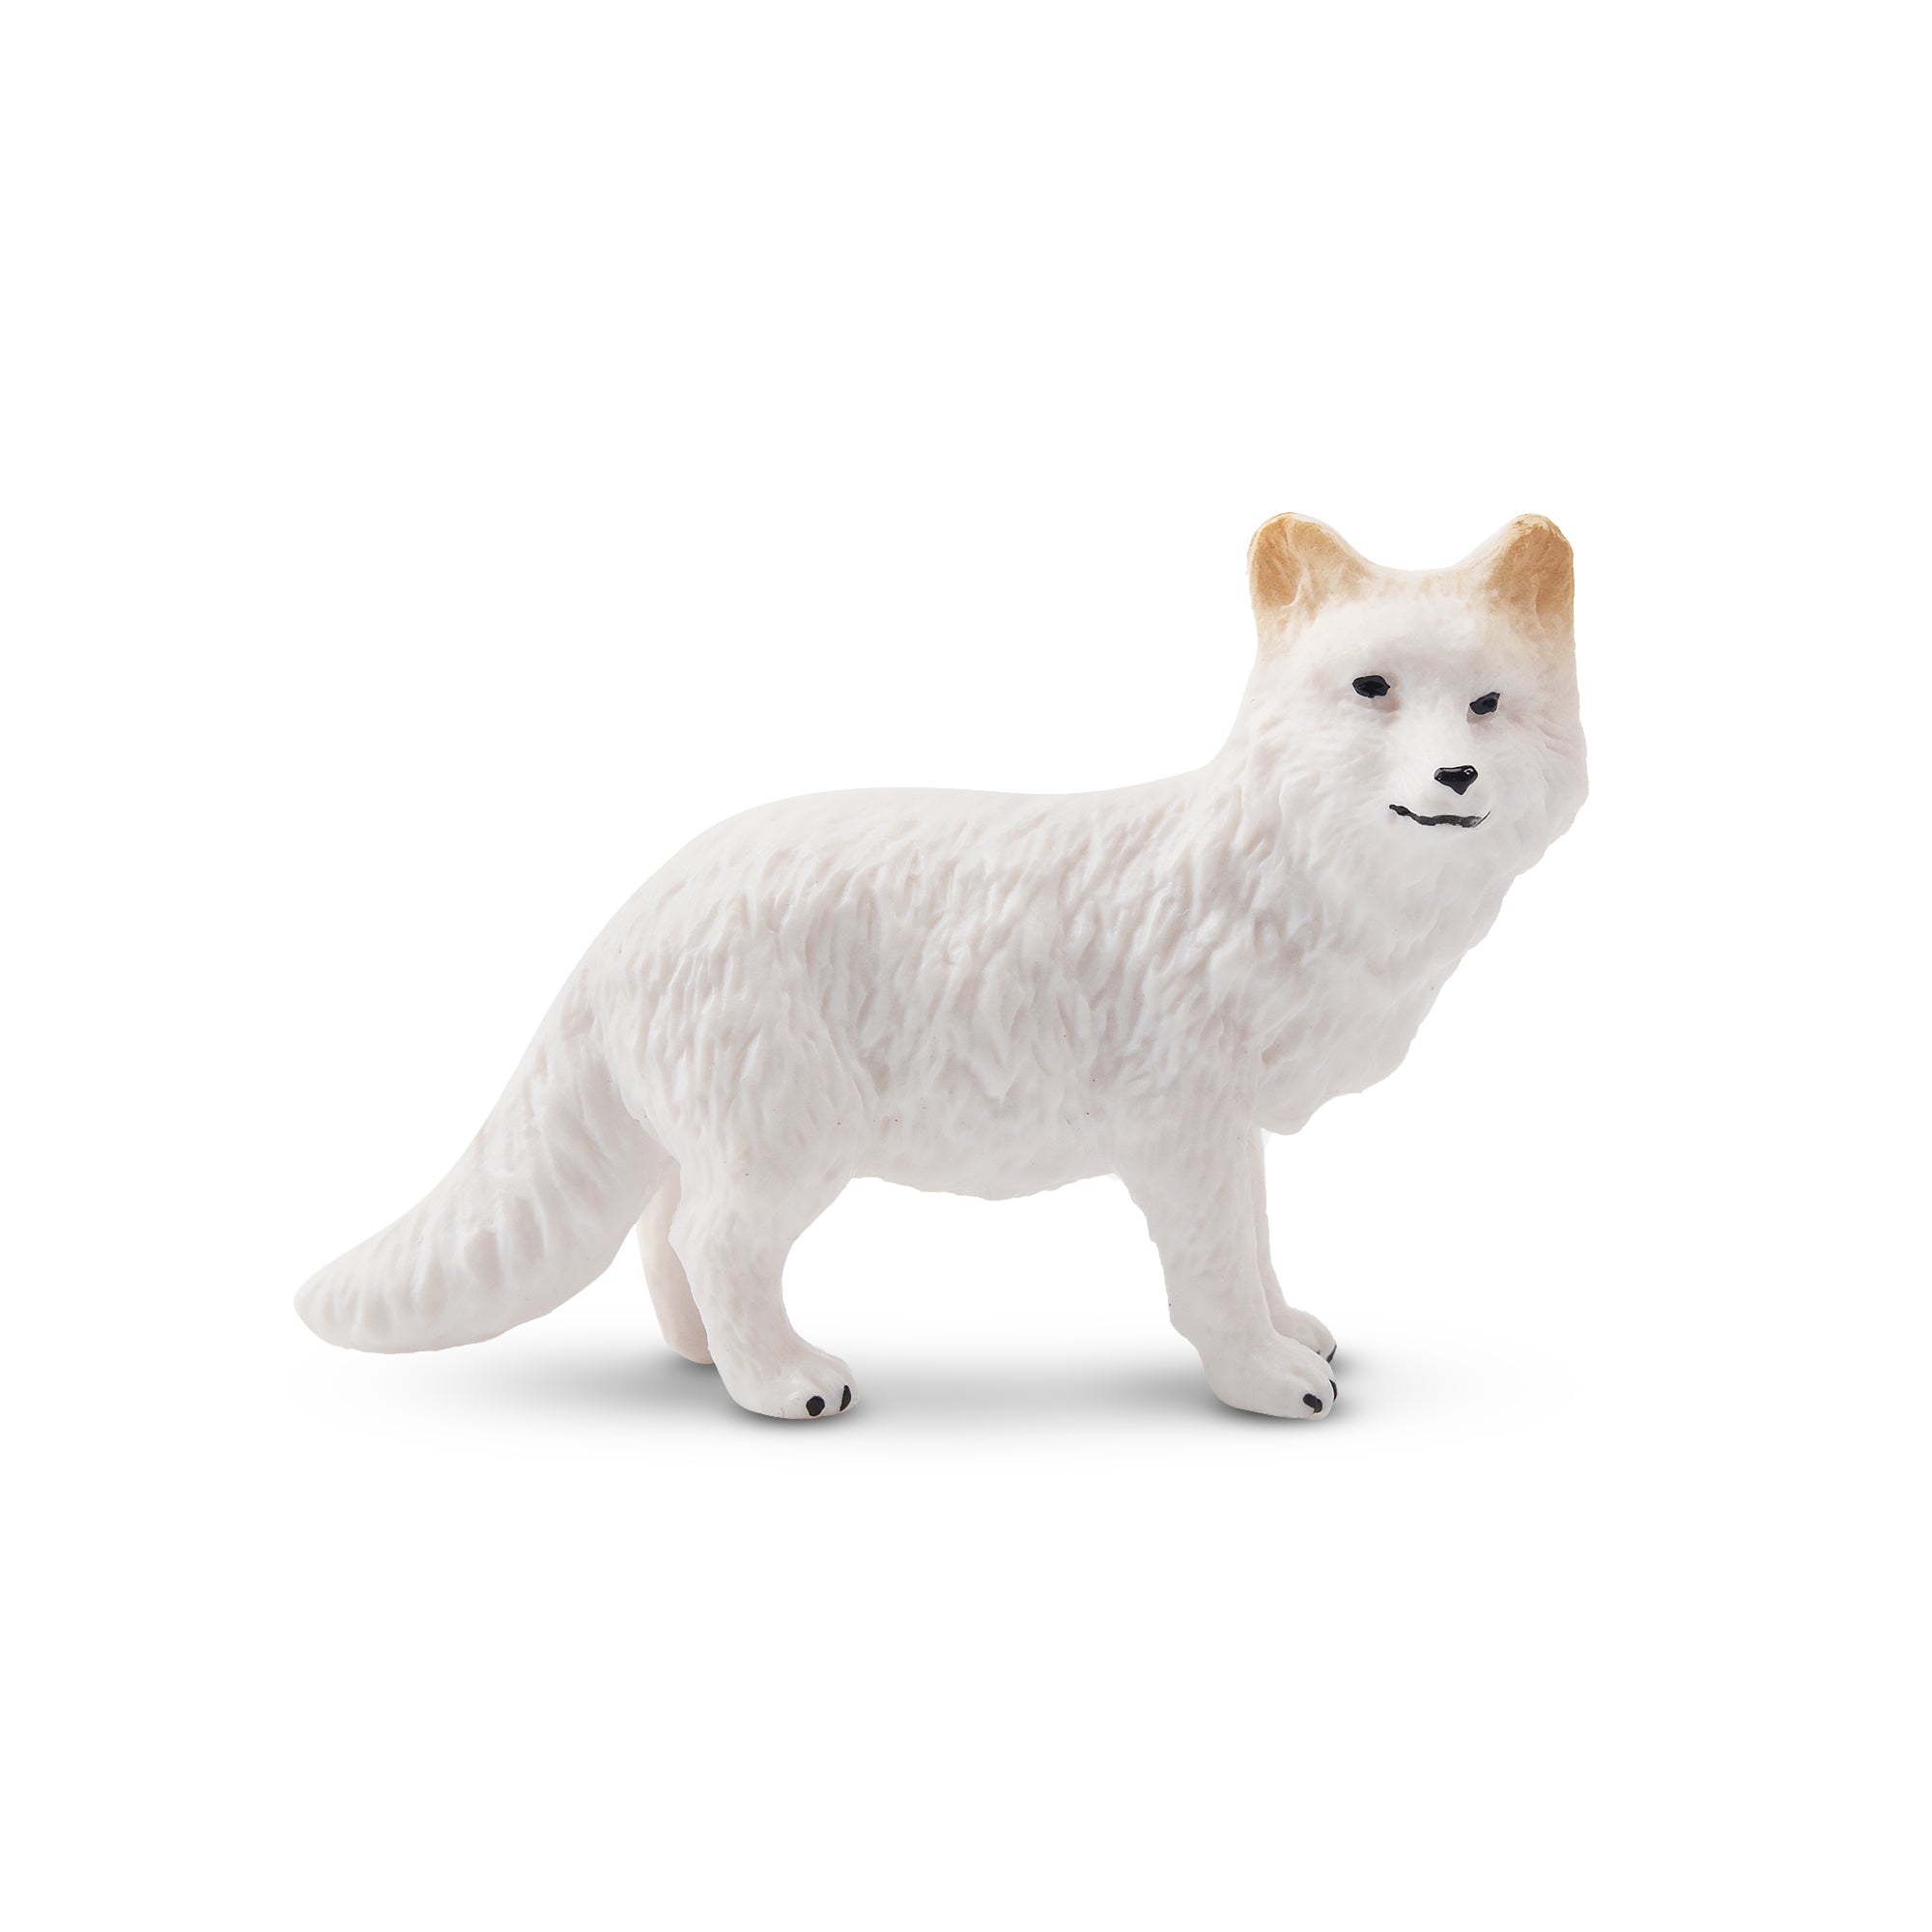 Toymany Arctic Fox Figurine Toy